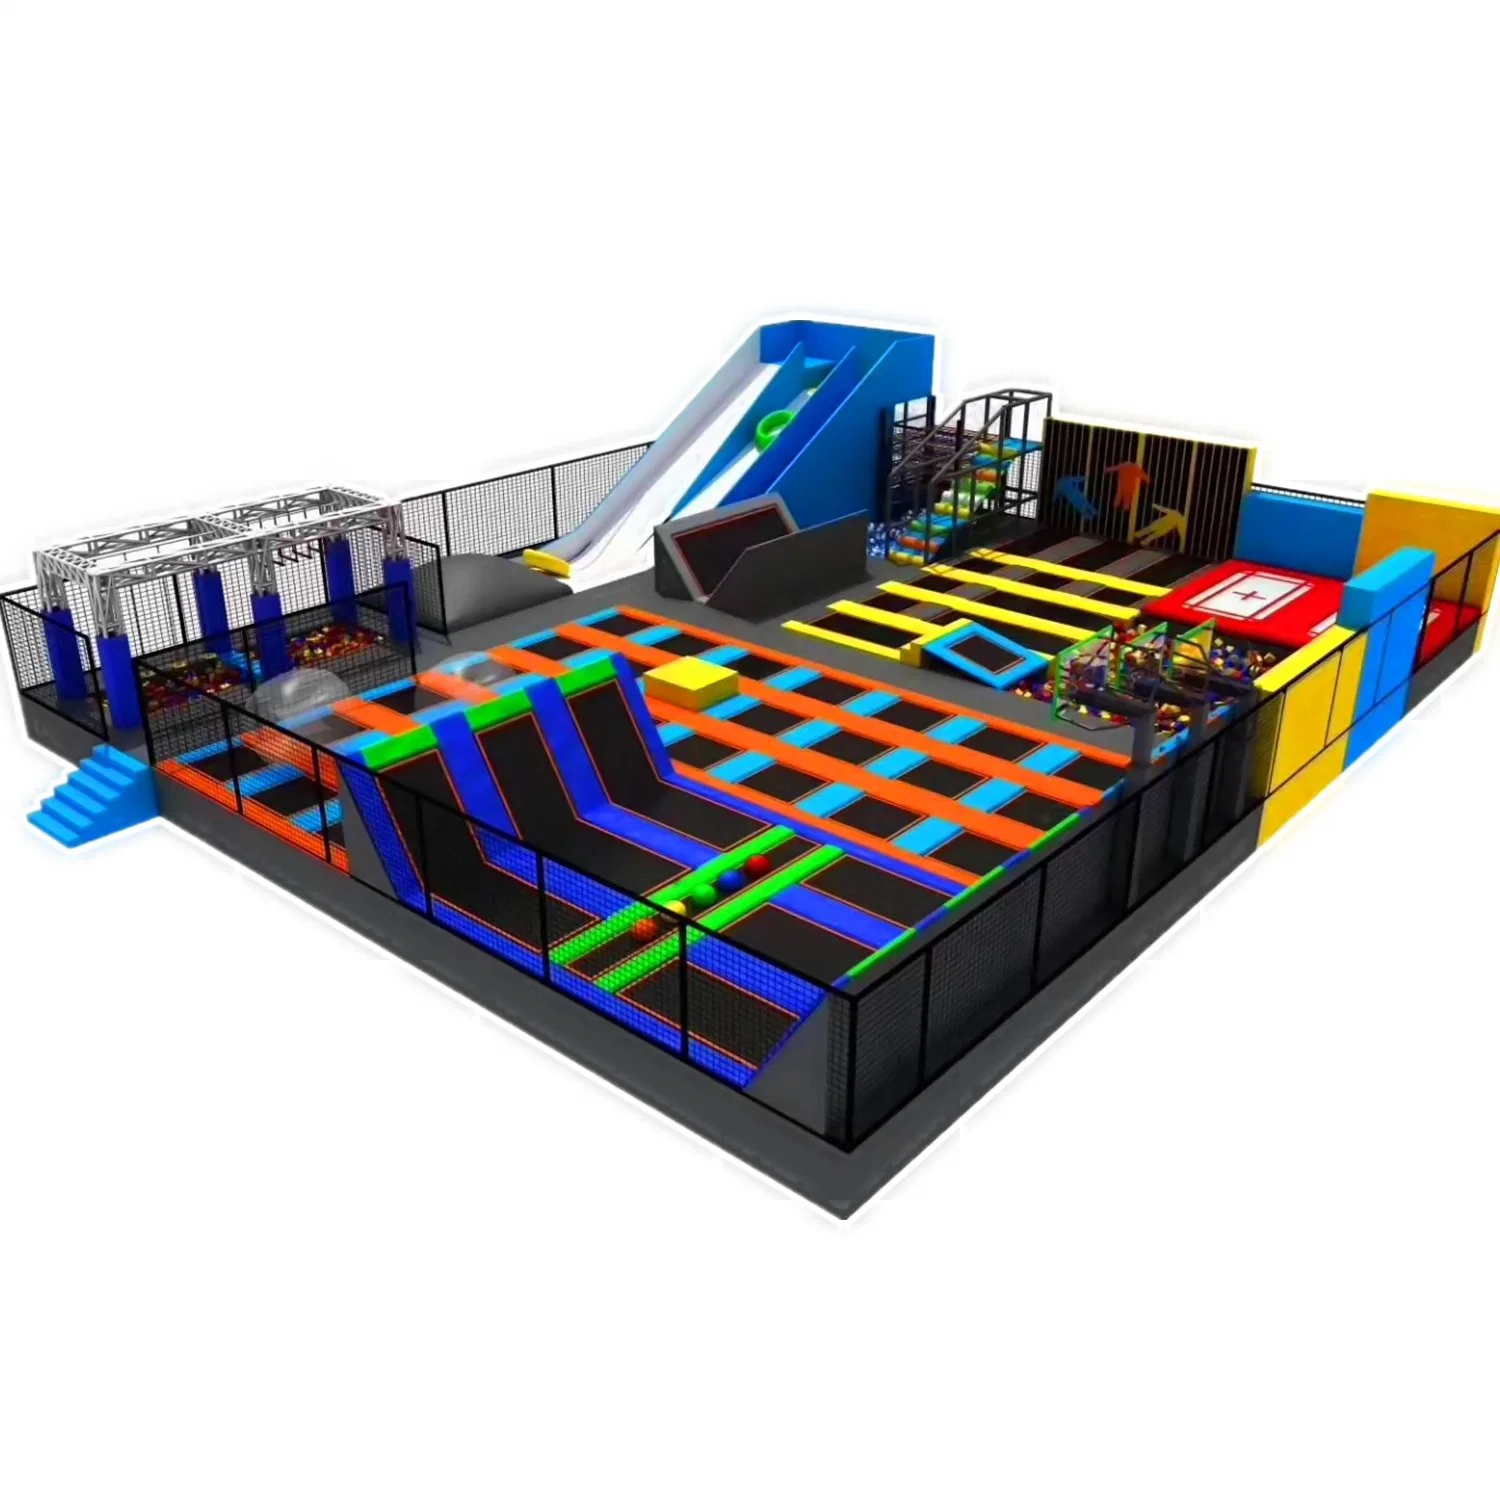 Aparelhos para crianças no parque de diversões infantil, trampolim Park Indoor Playground